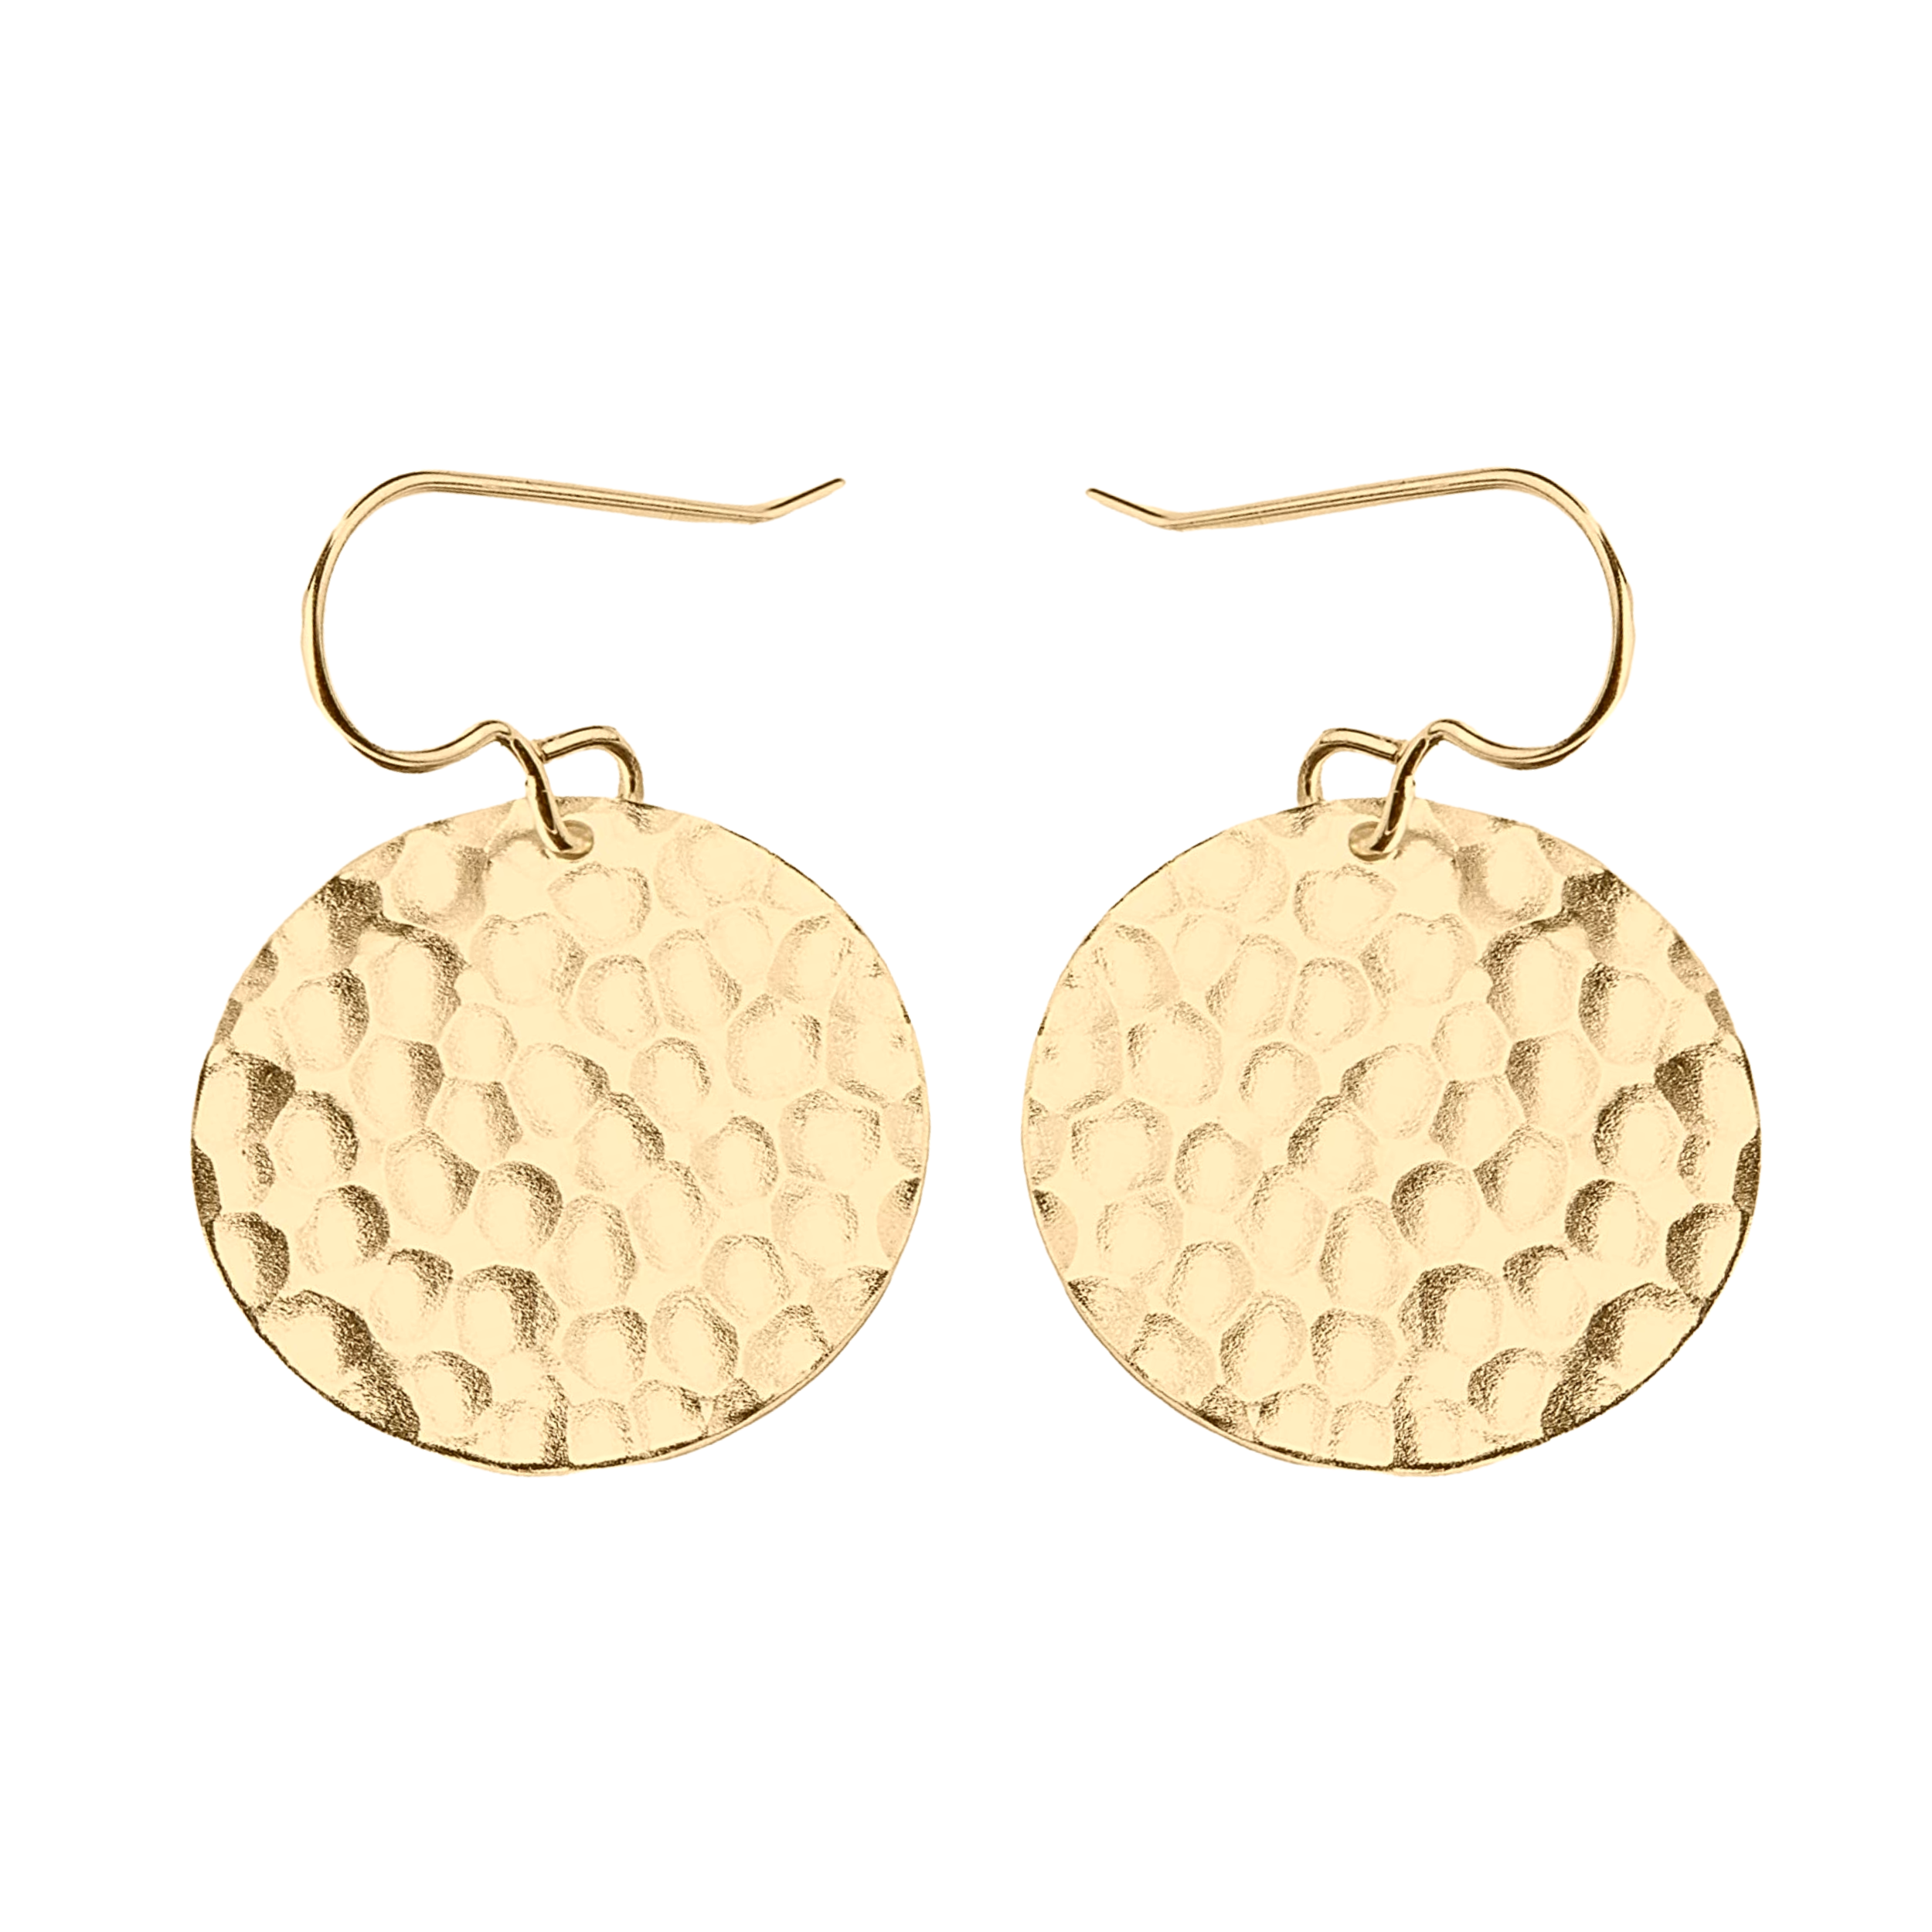 Gold Hammered Disc Dangle Earrings - Melanie Golden Jewelry - dangle earrings, earrings